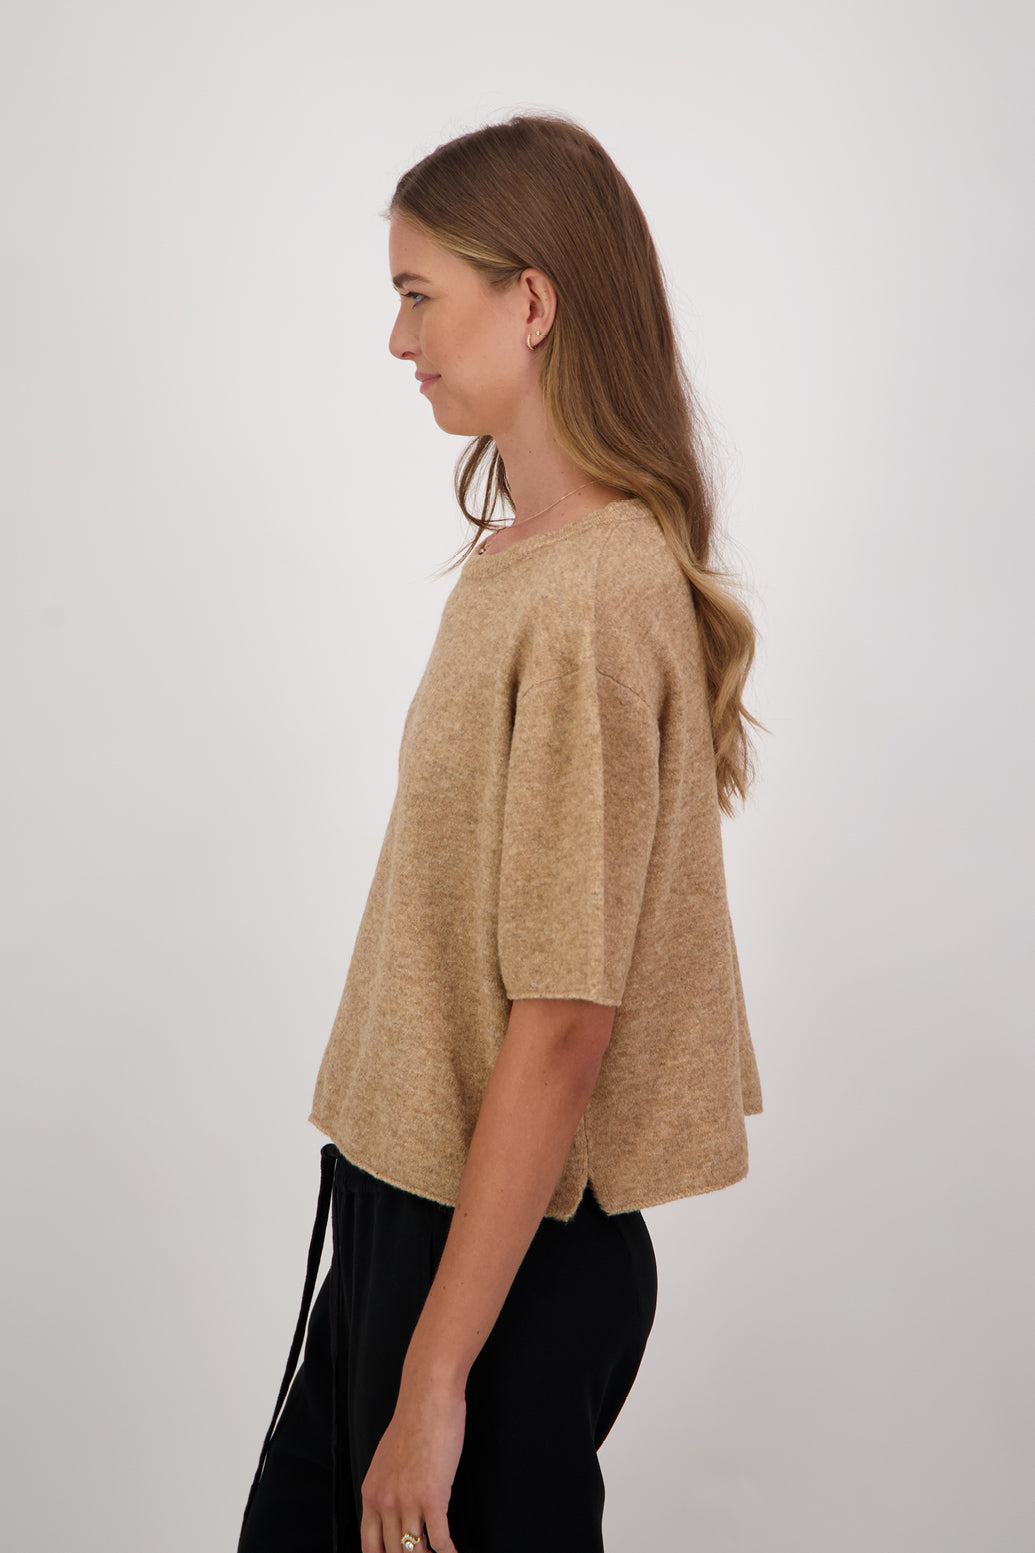 Dapper Wool Blend Short Sleeve Sweater/Top - CamelDapper Wool Blend Short Sleeve Top/T-Shirt - Camel